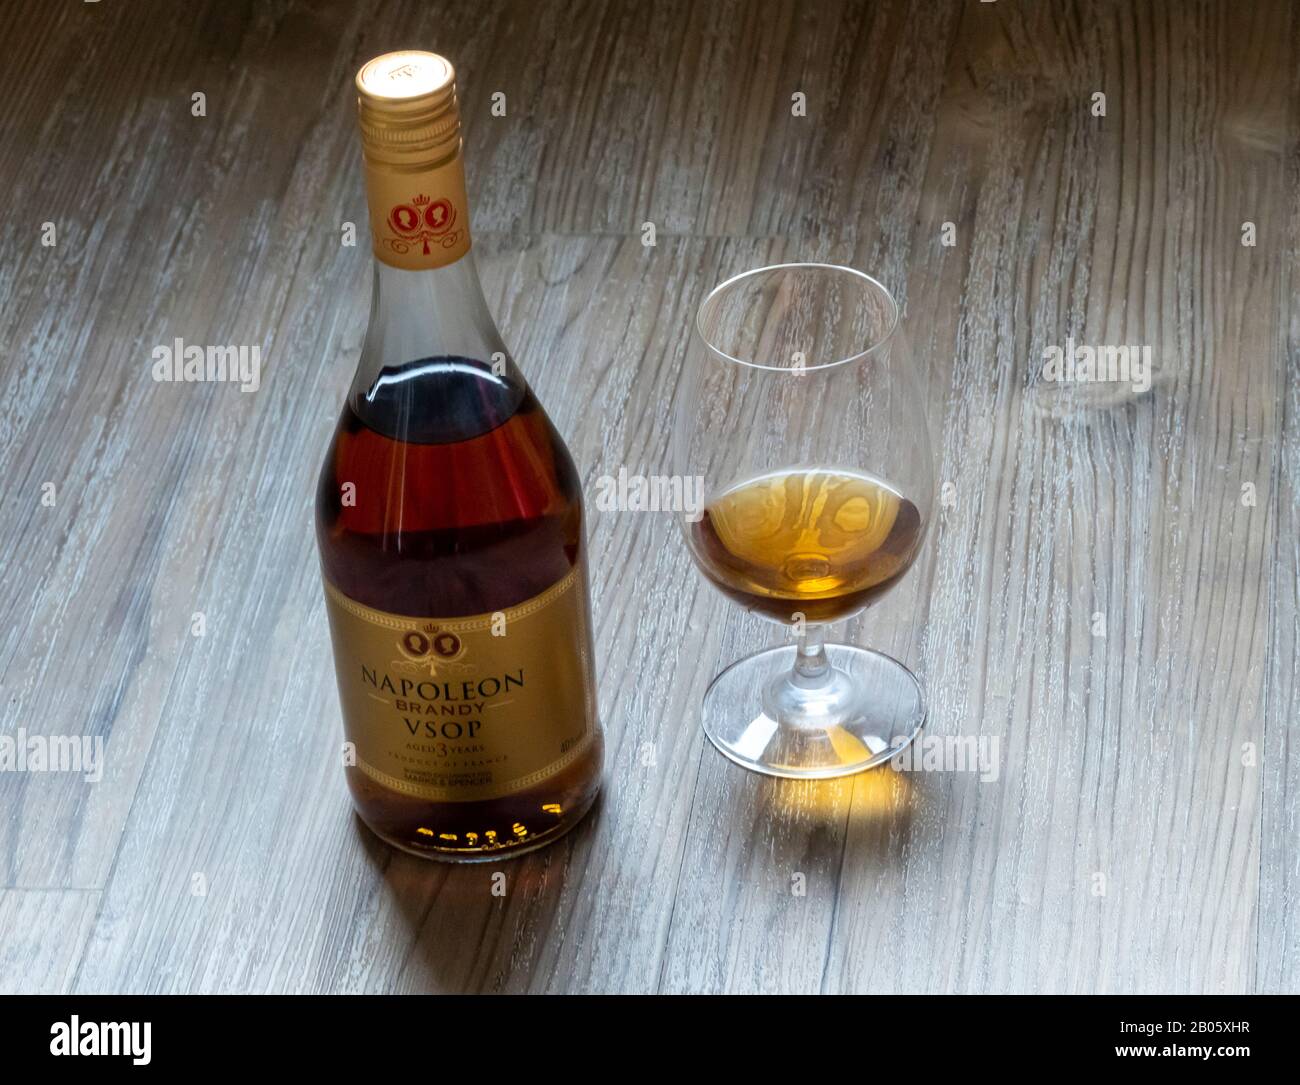 Botella y snifter de Napoleón Brandy en una mesa de madera Foto de stock